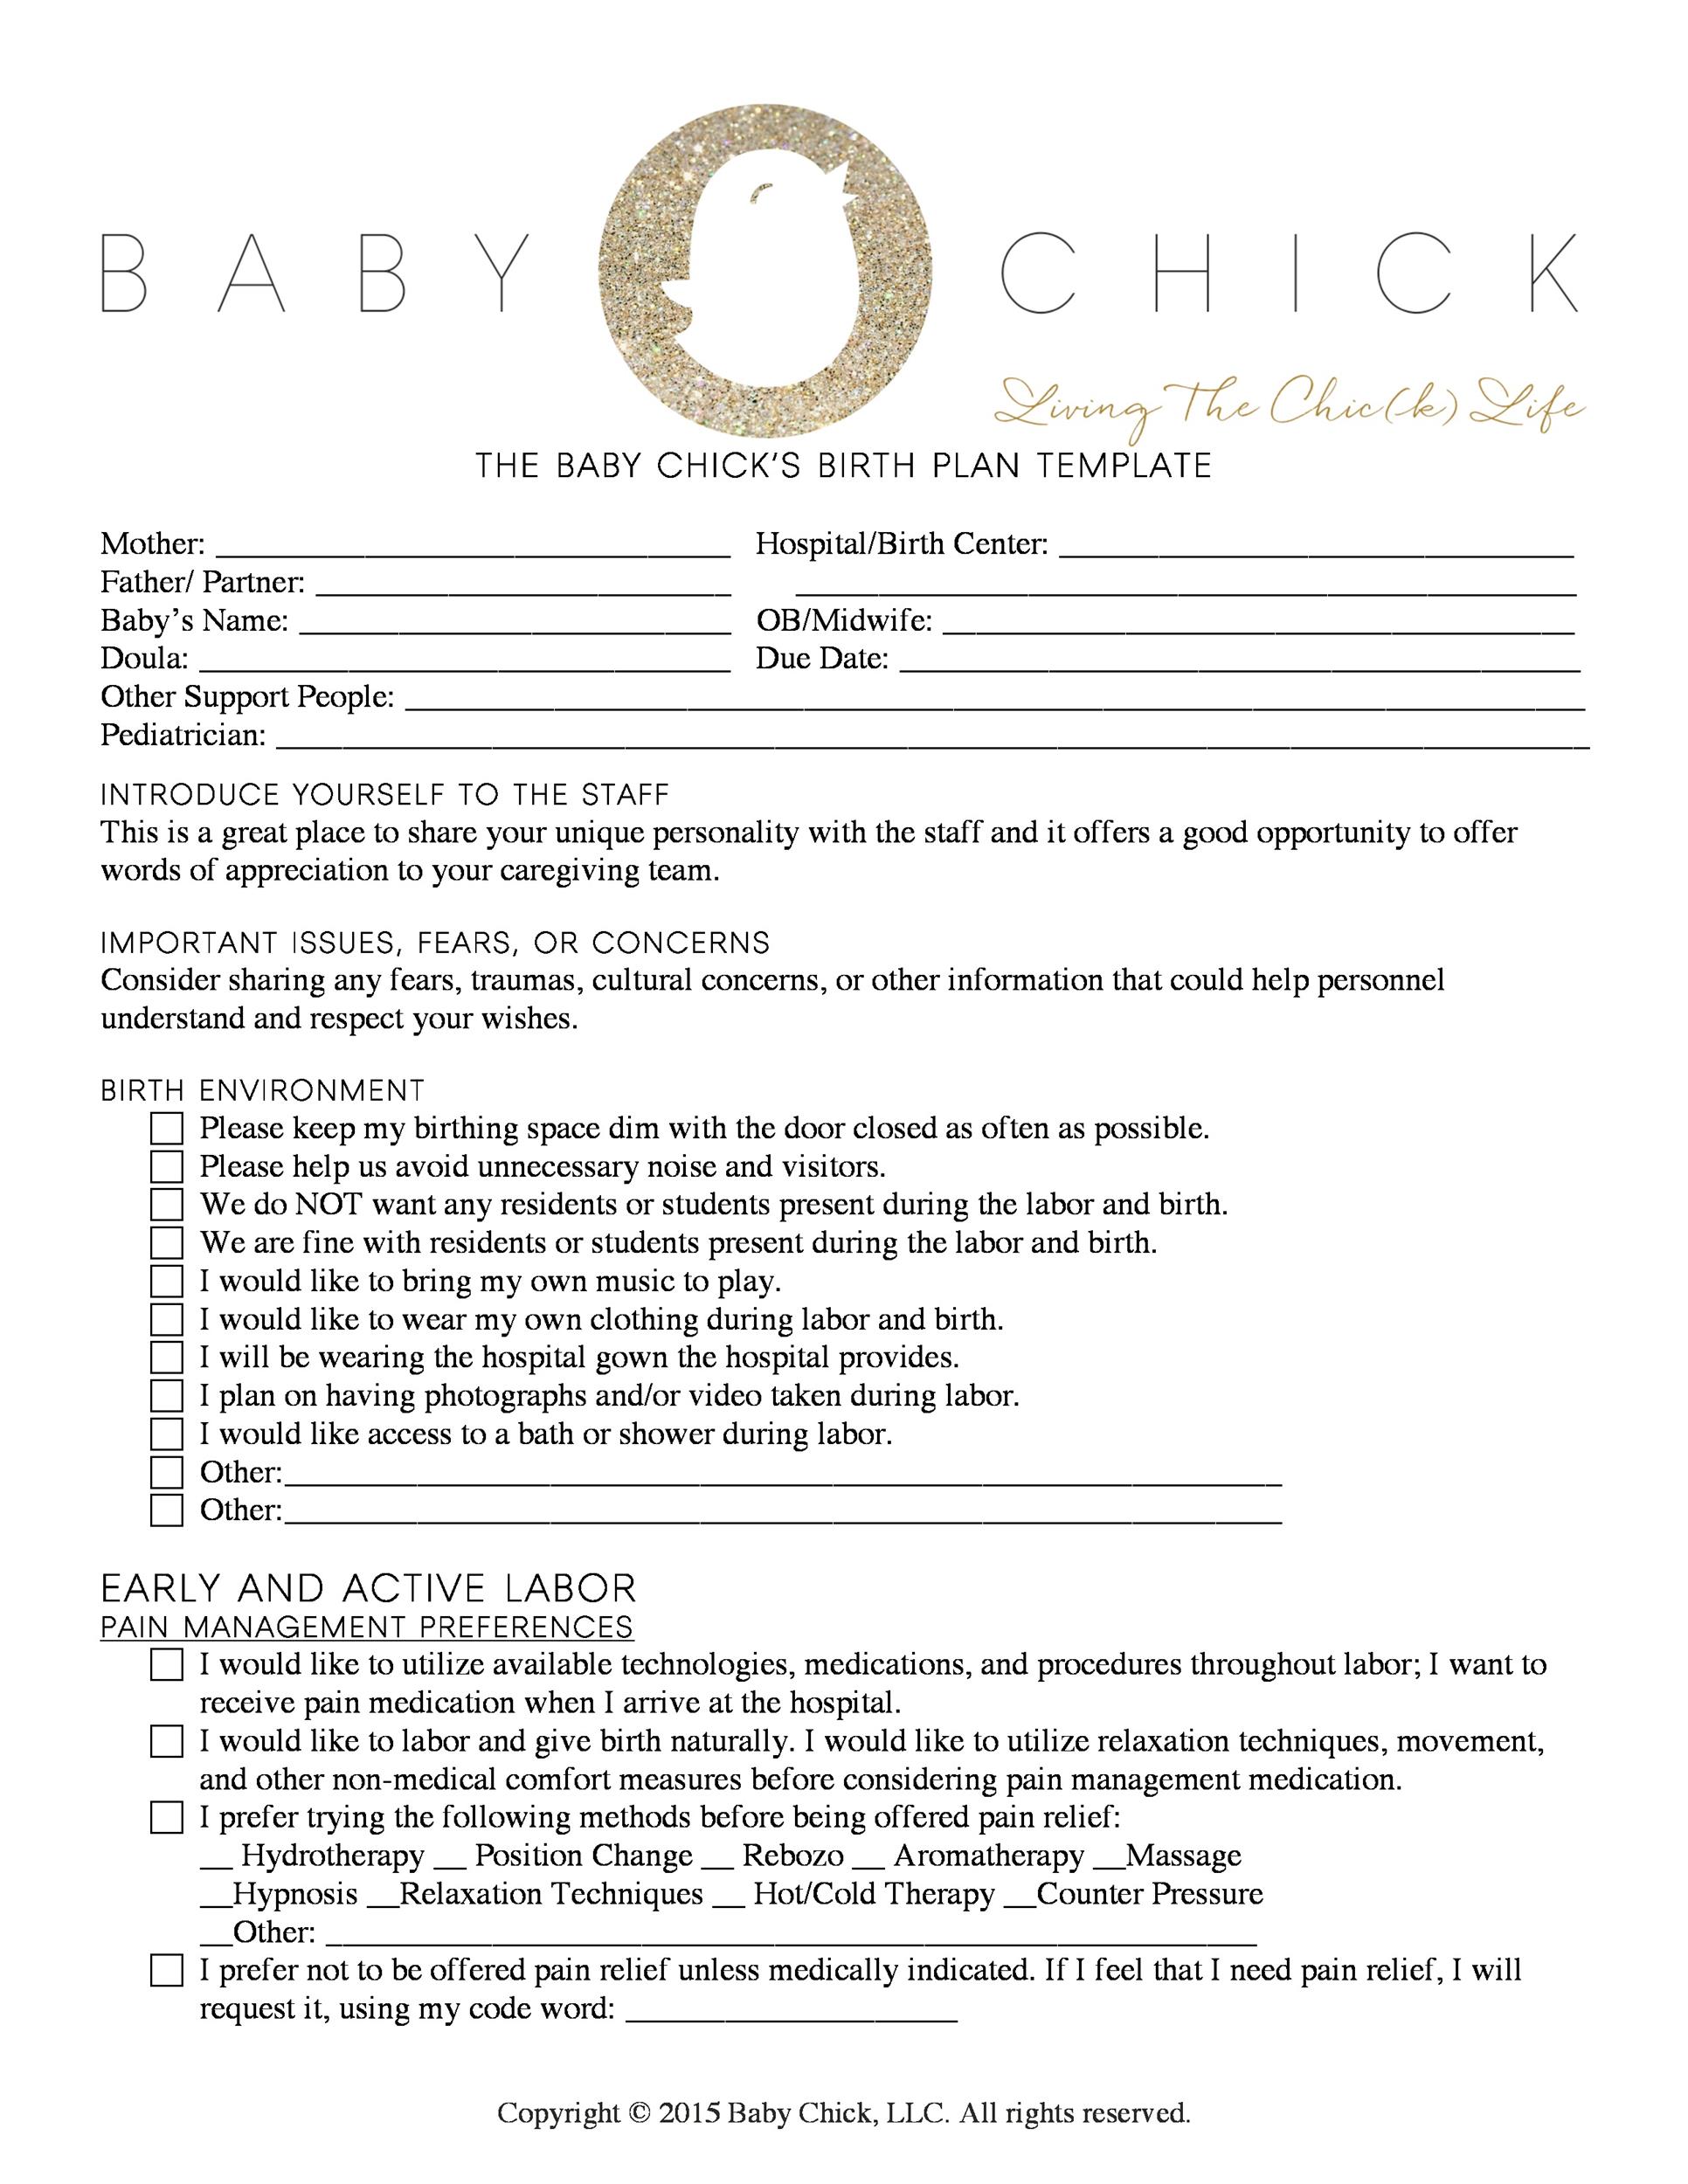 printable-editable-birth-plan-template